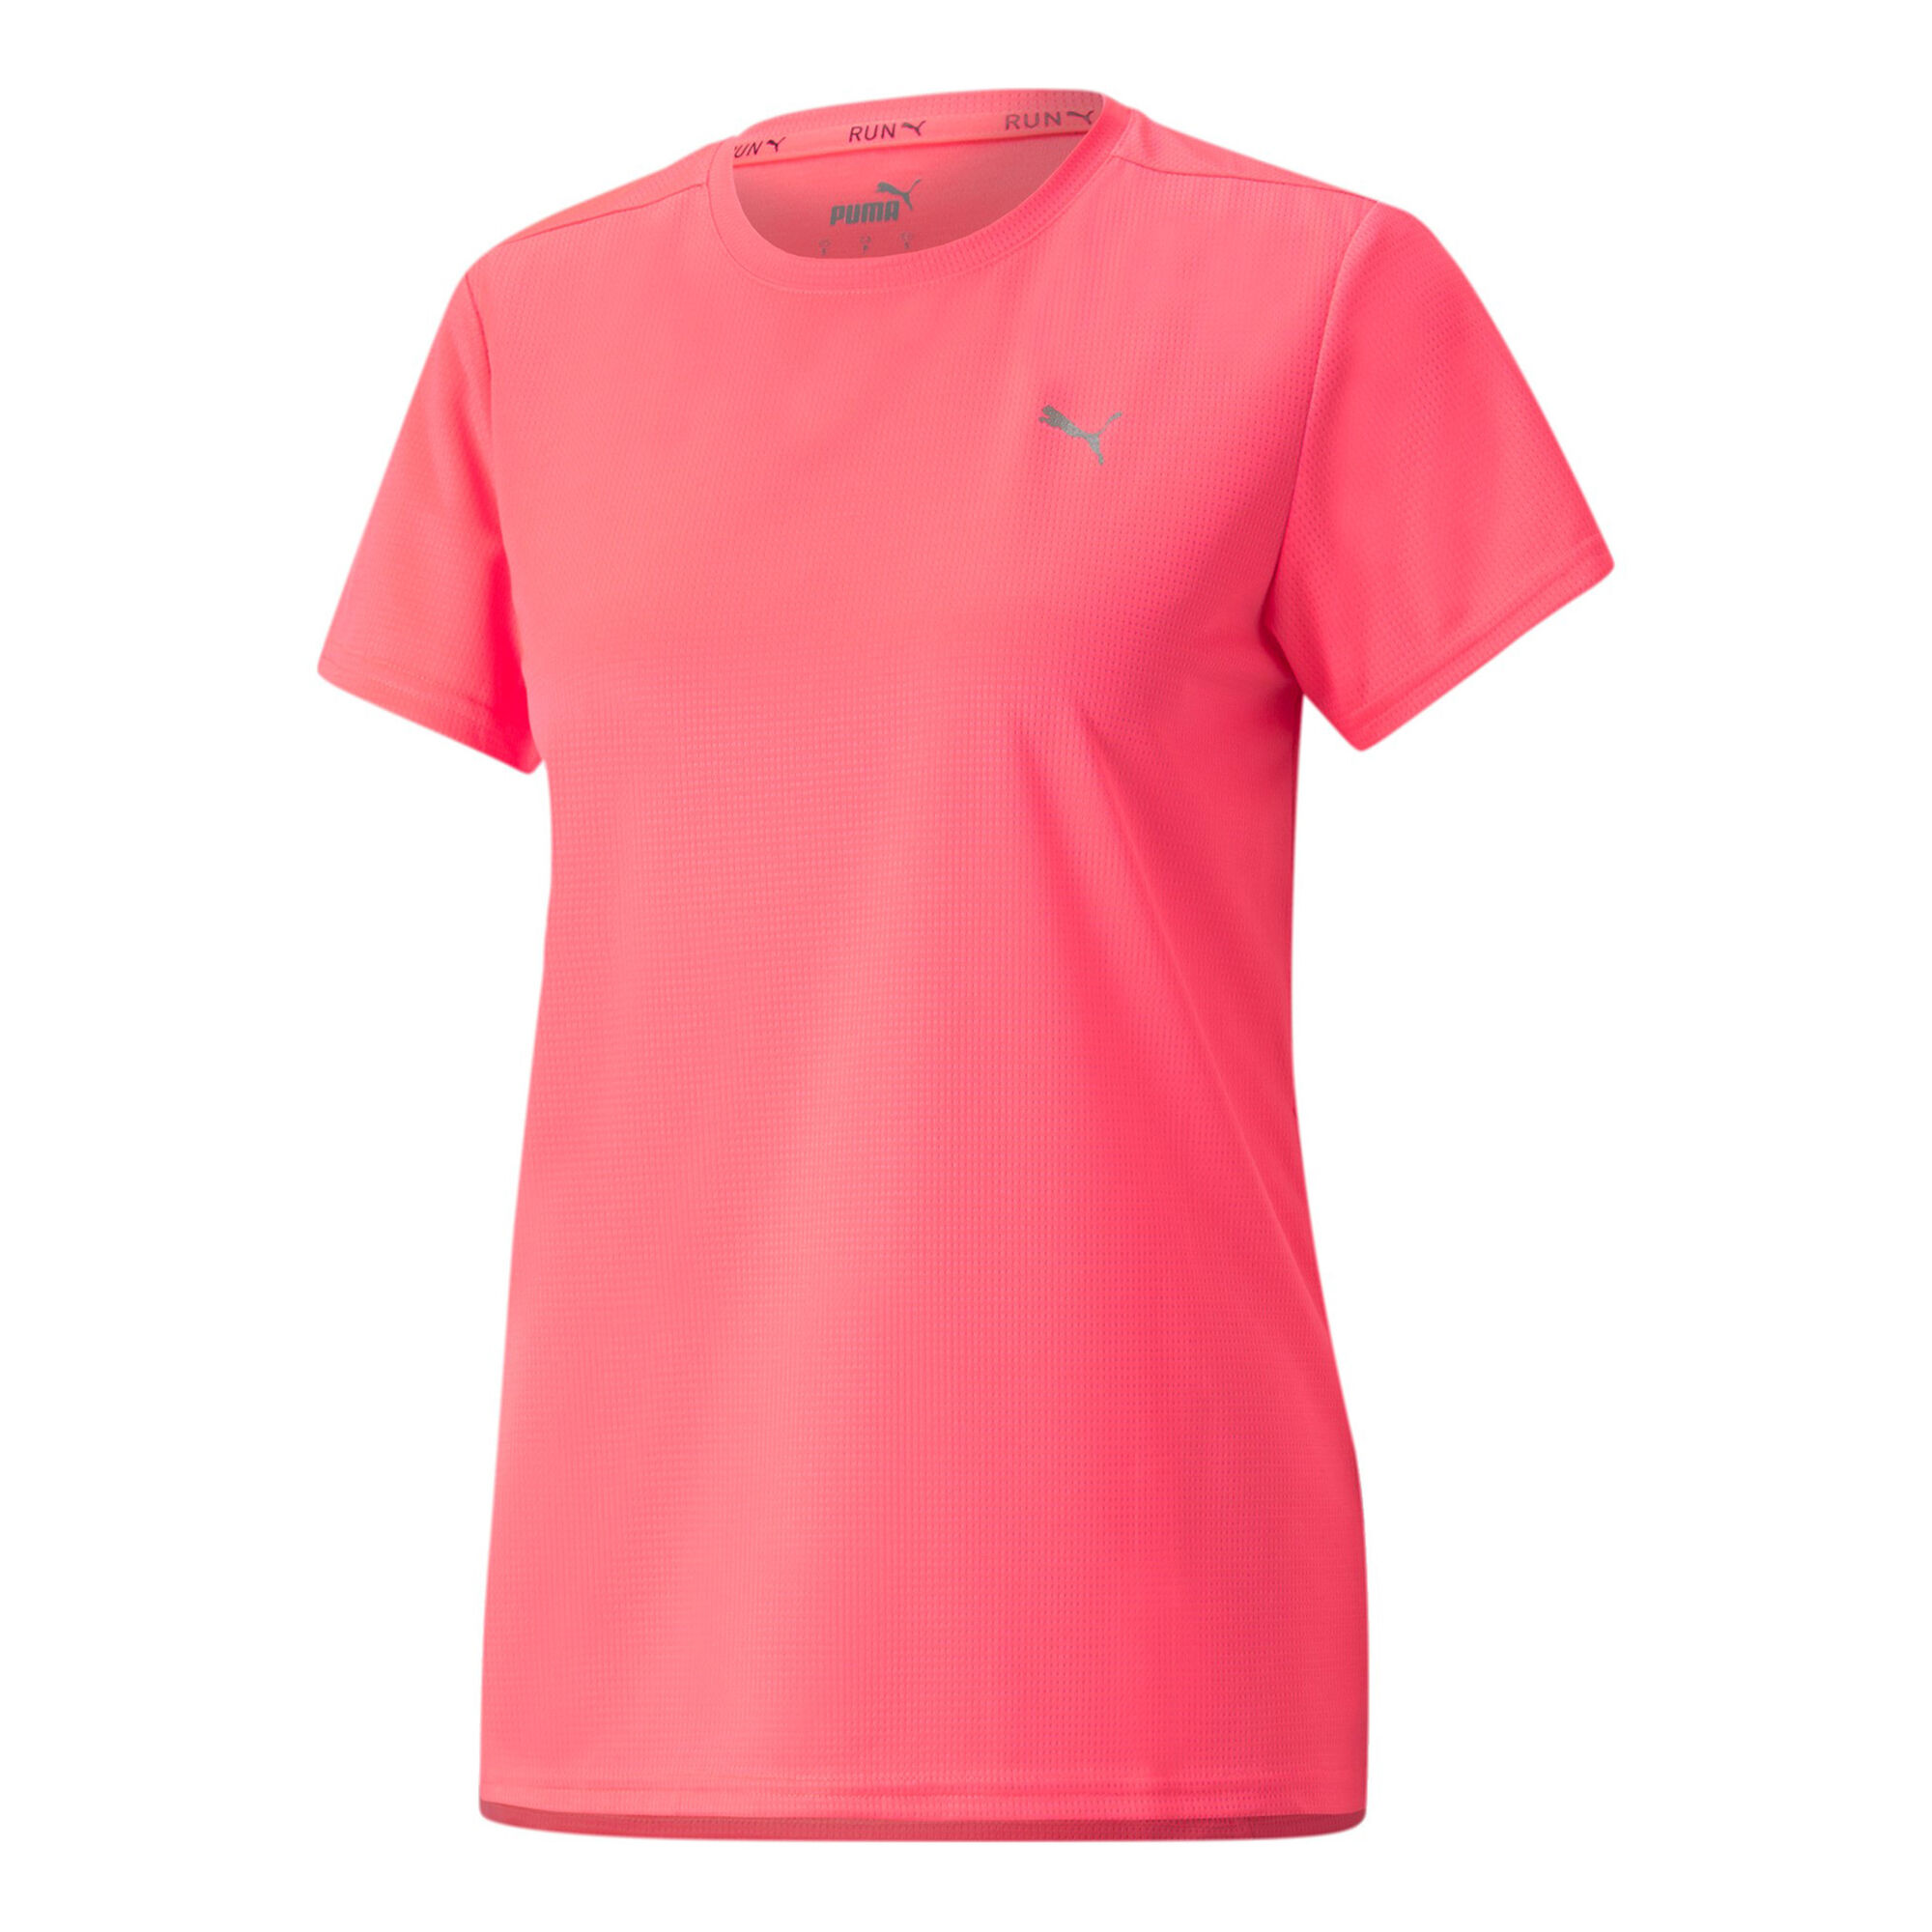 Puma Damen Point - Pink Favorite Running | online Laufshirt kaufen